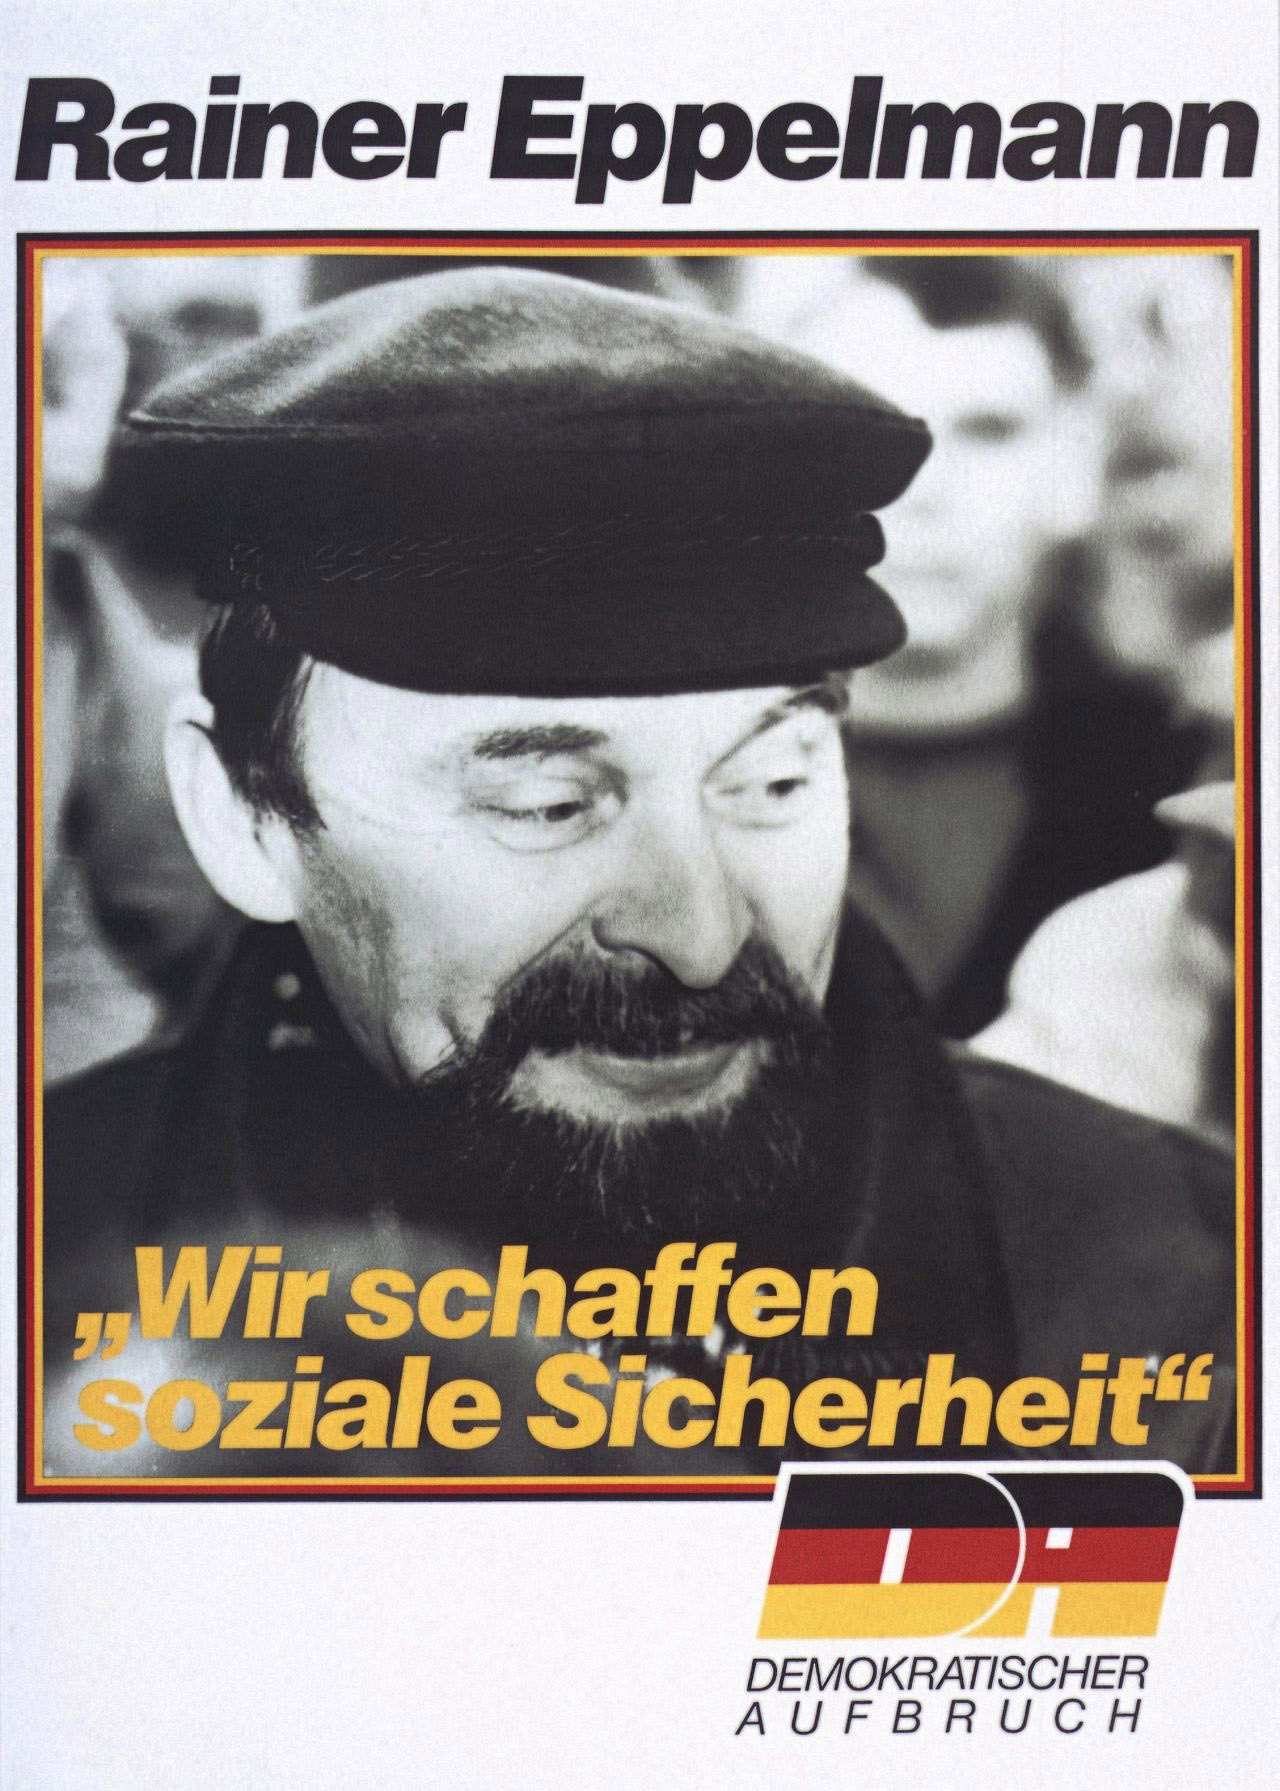 Weißgrundiges Wahlplakat: Foto von Rainer Eppelmann. Text dazu: Wir schaffen soziale Sicherheit!. Demokratischer Aufbruch.